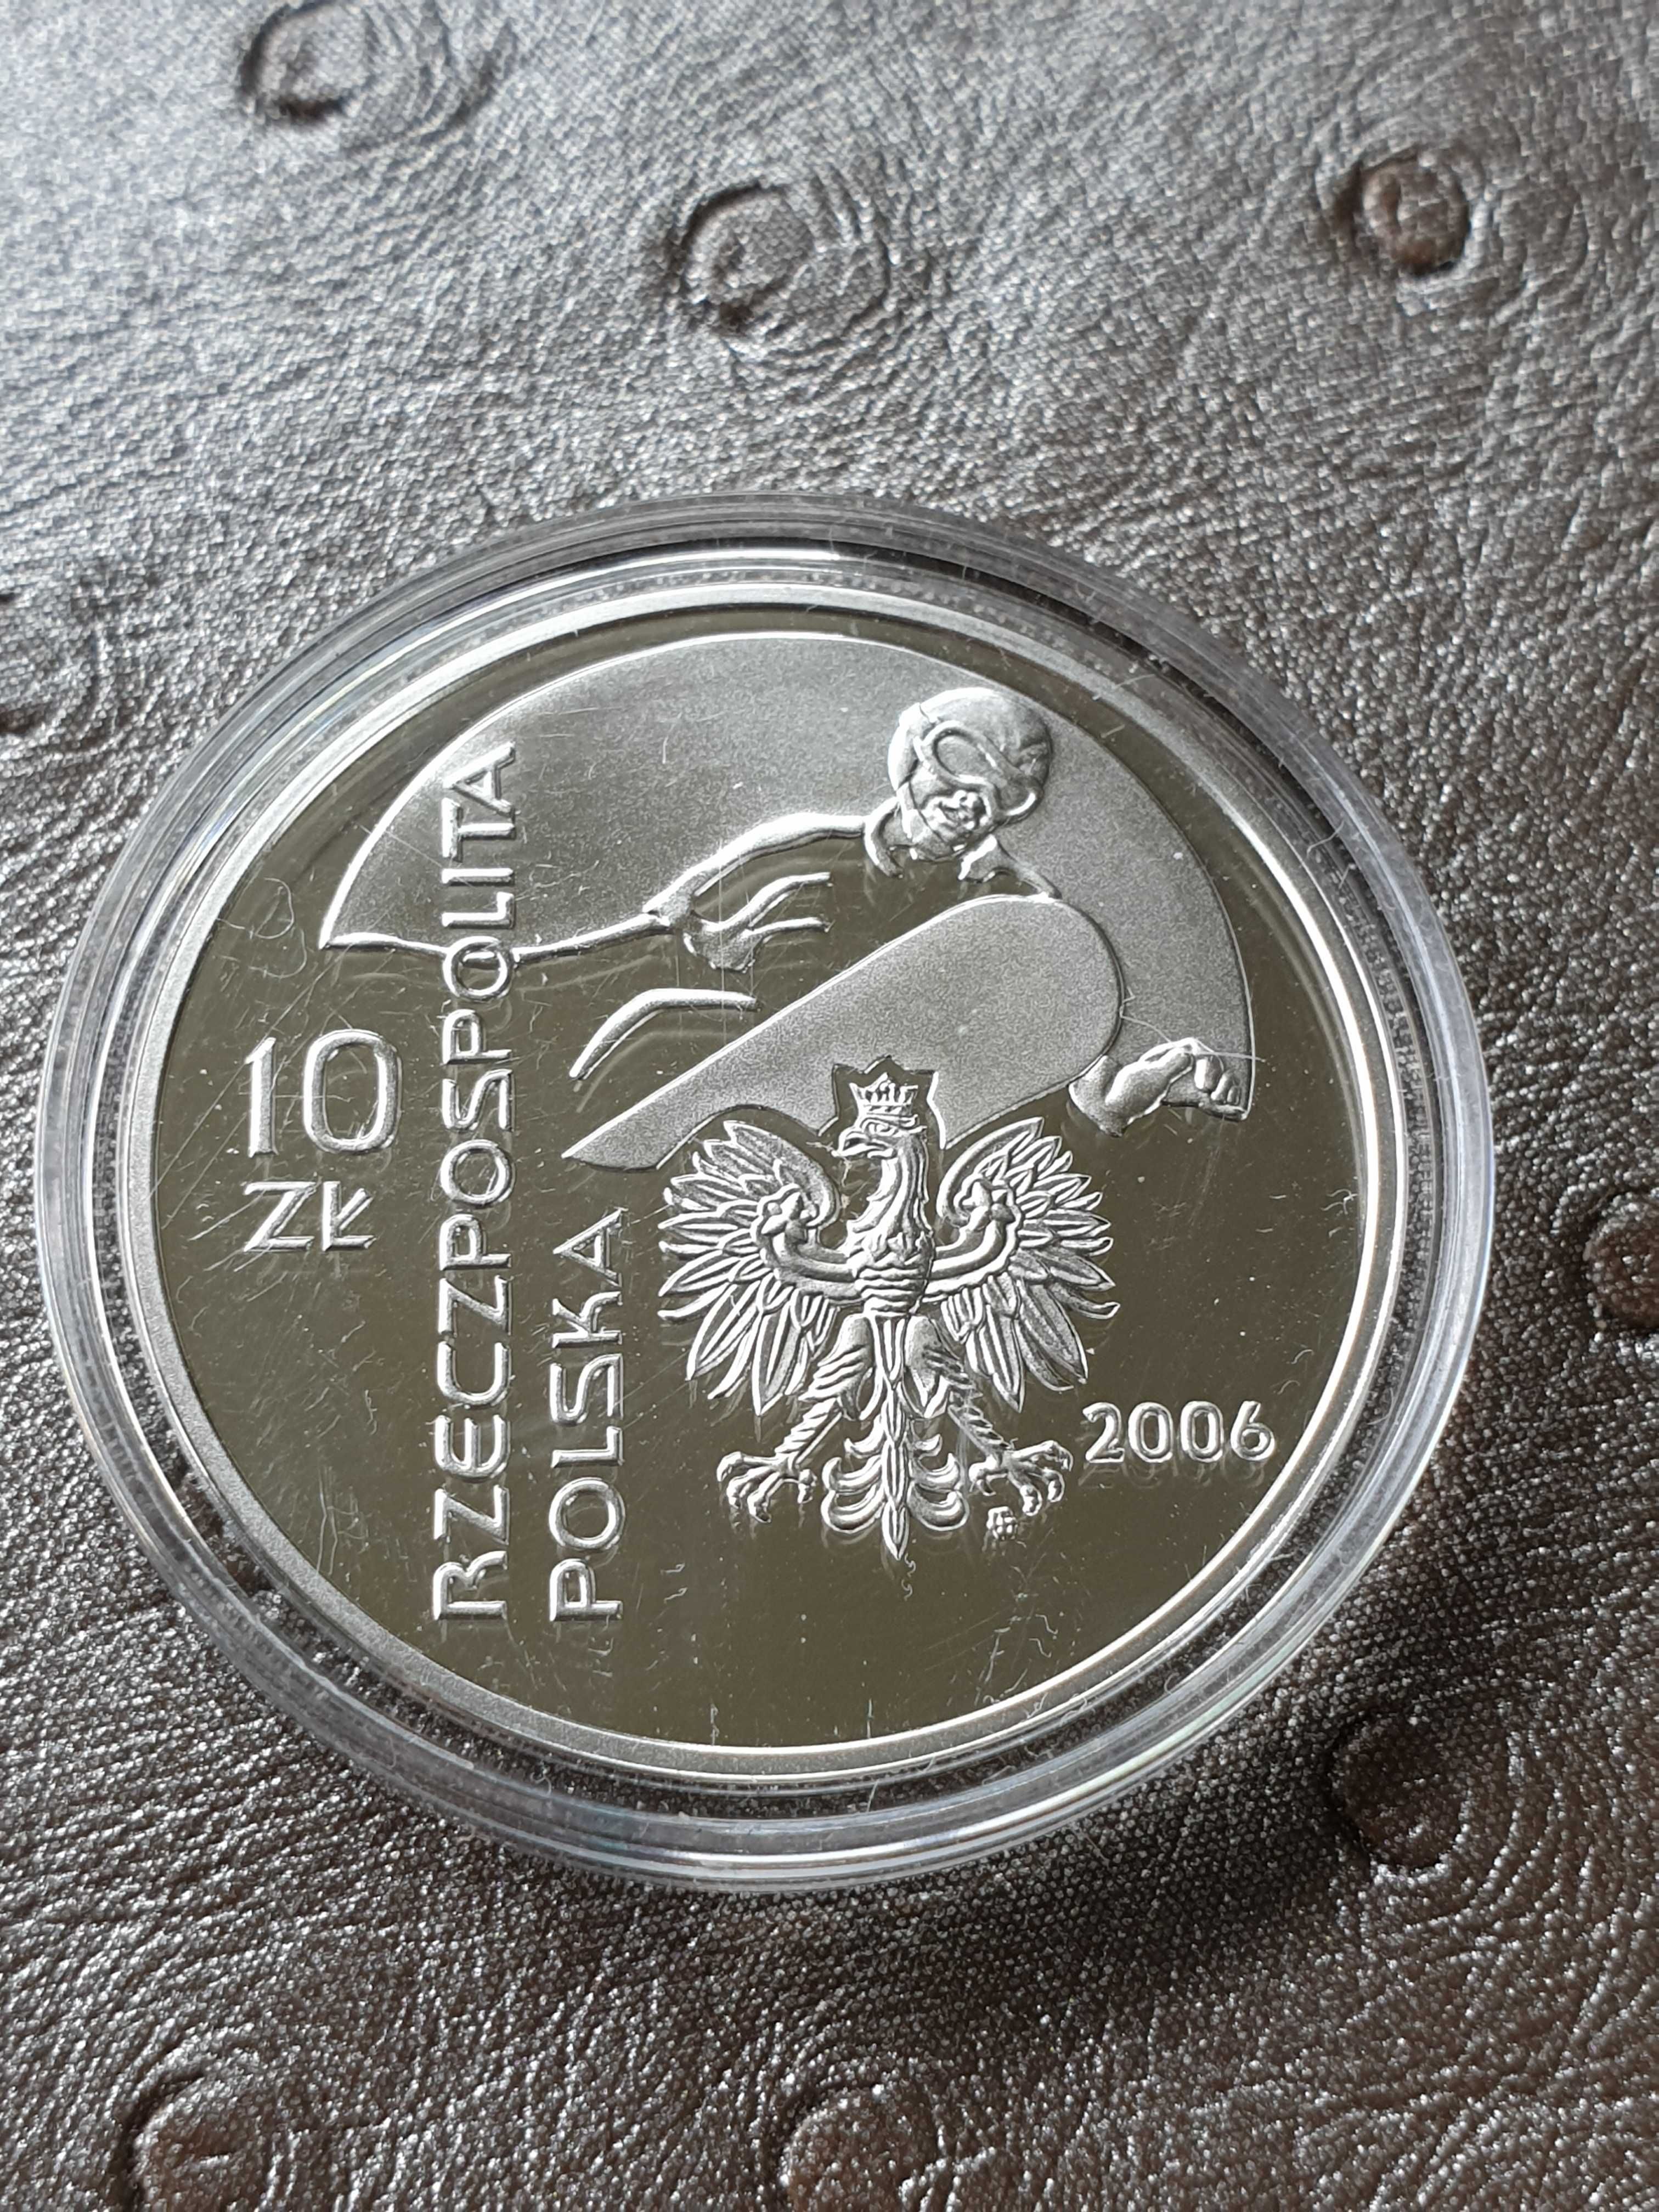 Moneta srebrna 10 zł. - Igrzyska olimpijskie TURYN 2006 x